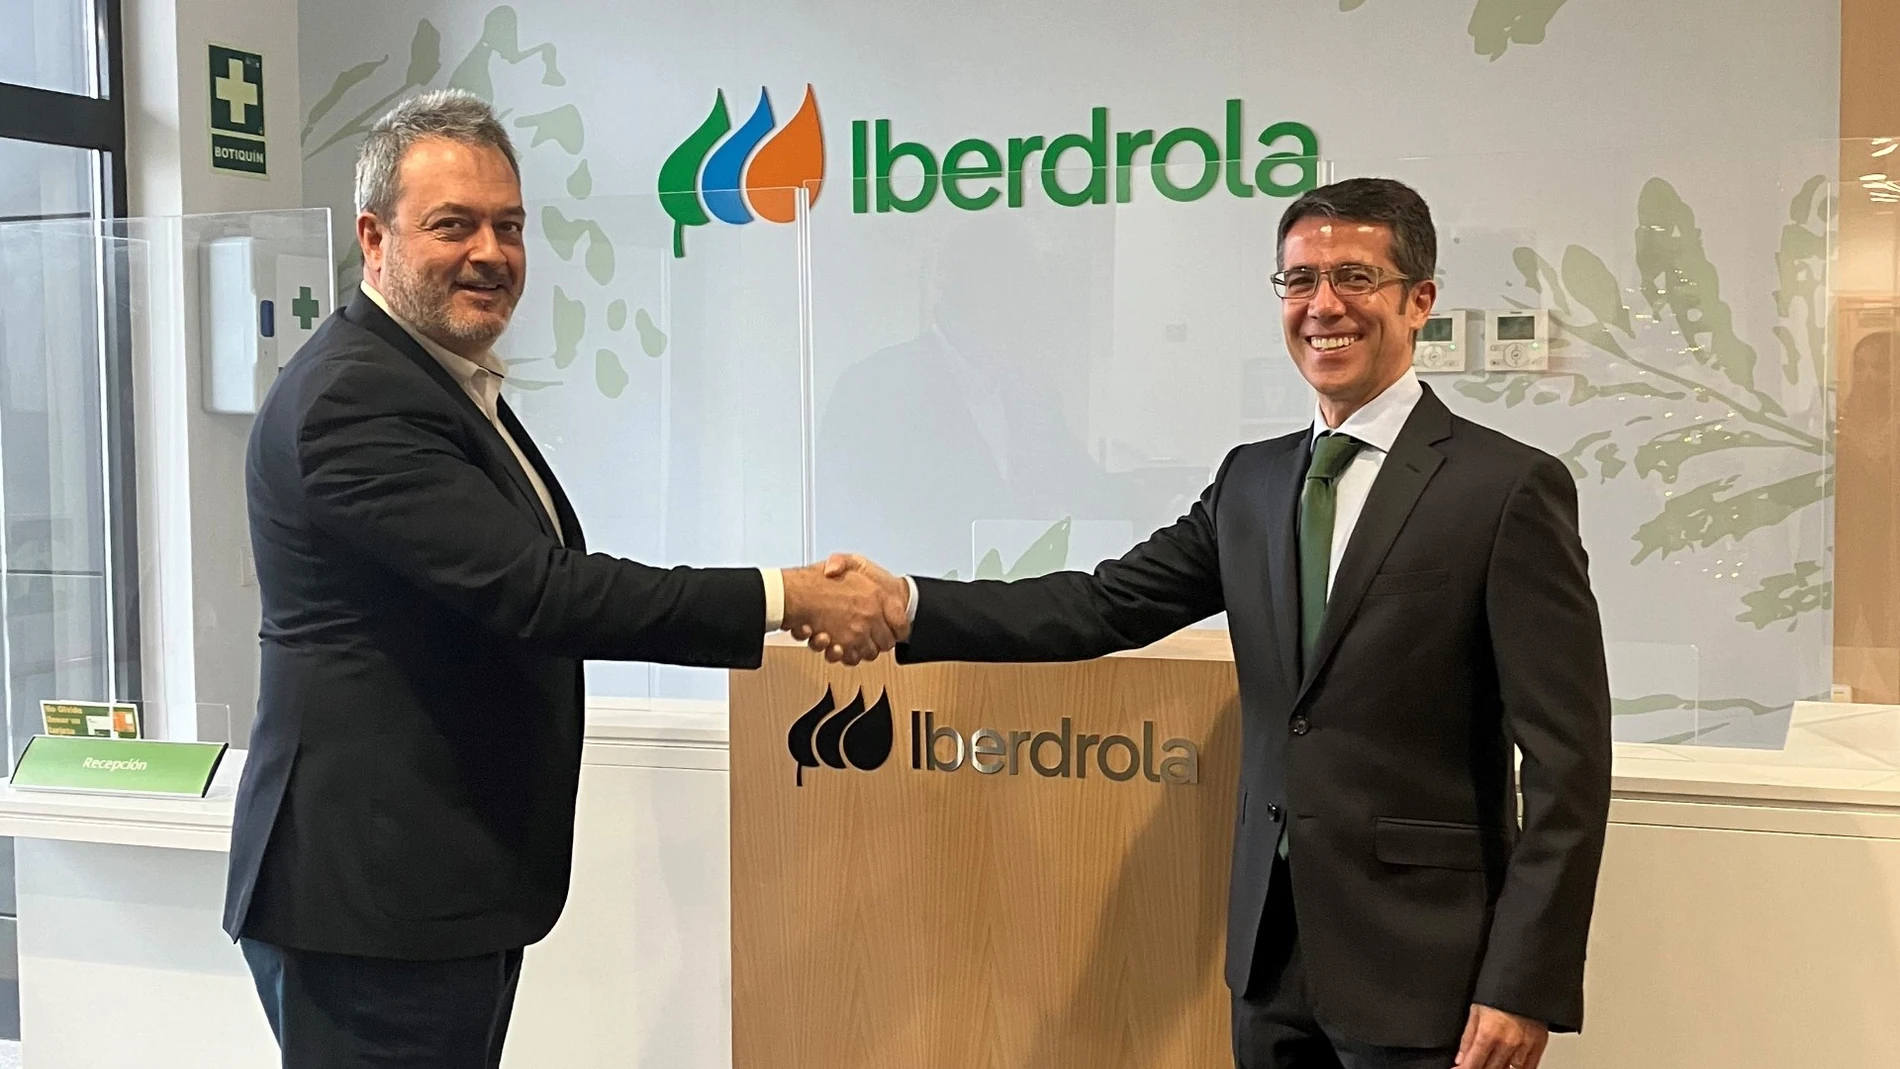 El presidente de COAF Palencia, Antonio Landa, y el director comercial de Iberdrola en Castilla y León, Celiano García, suscriben el acuerdo